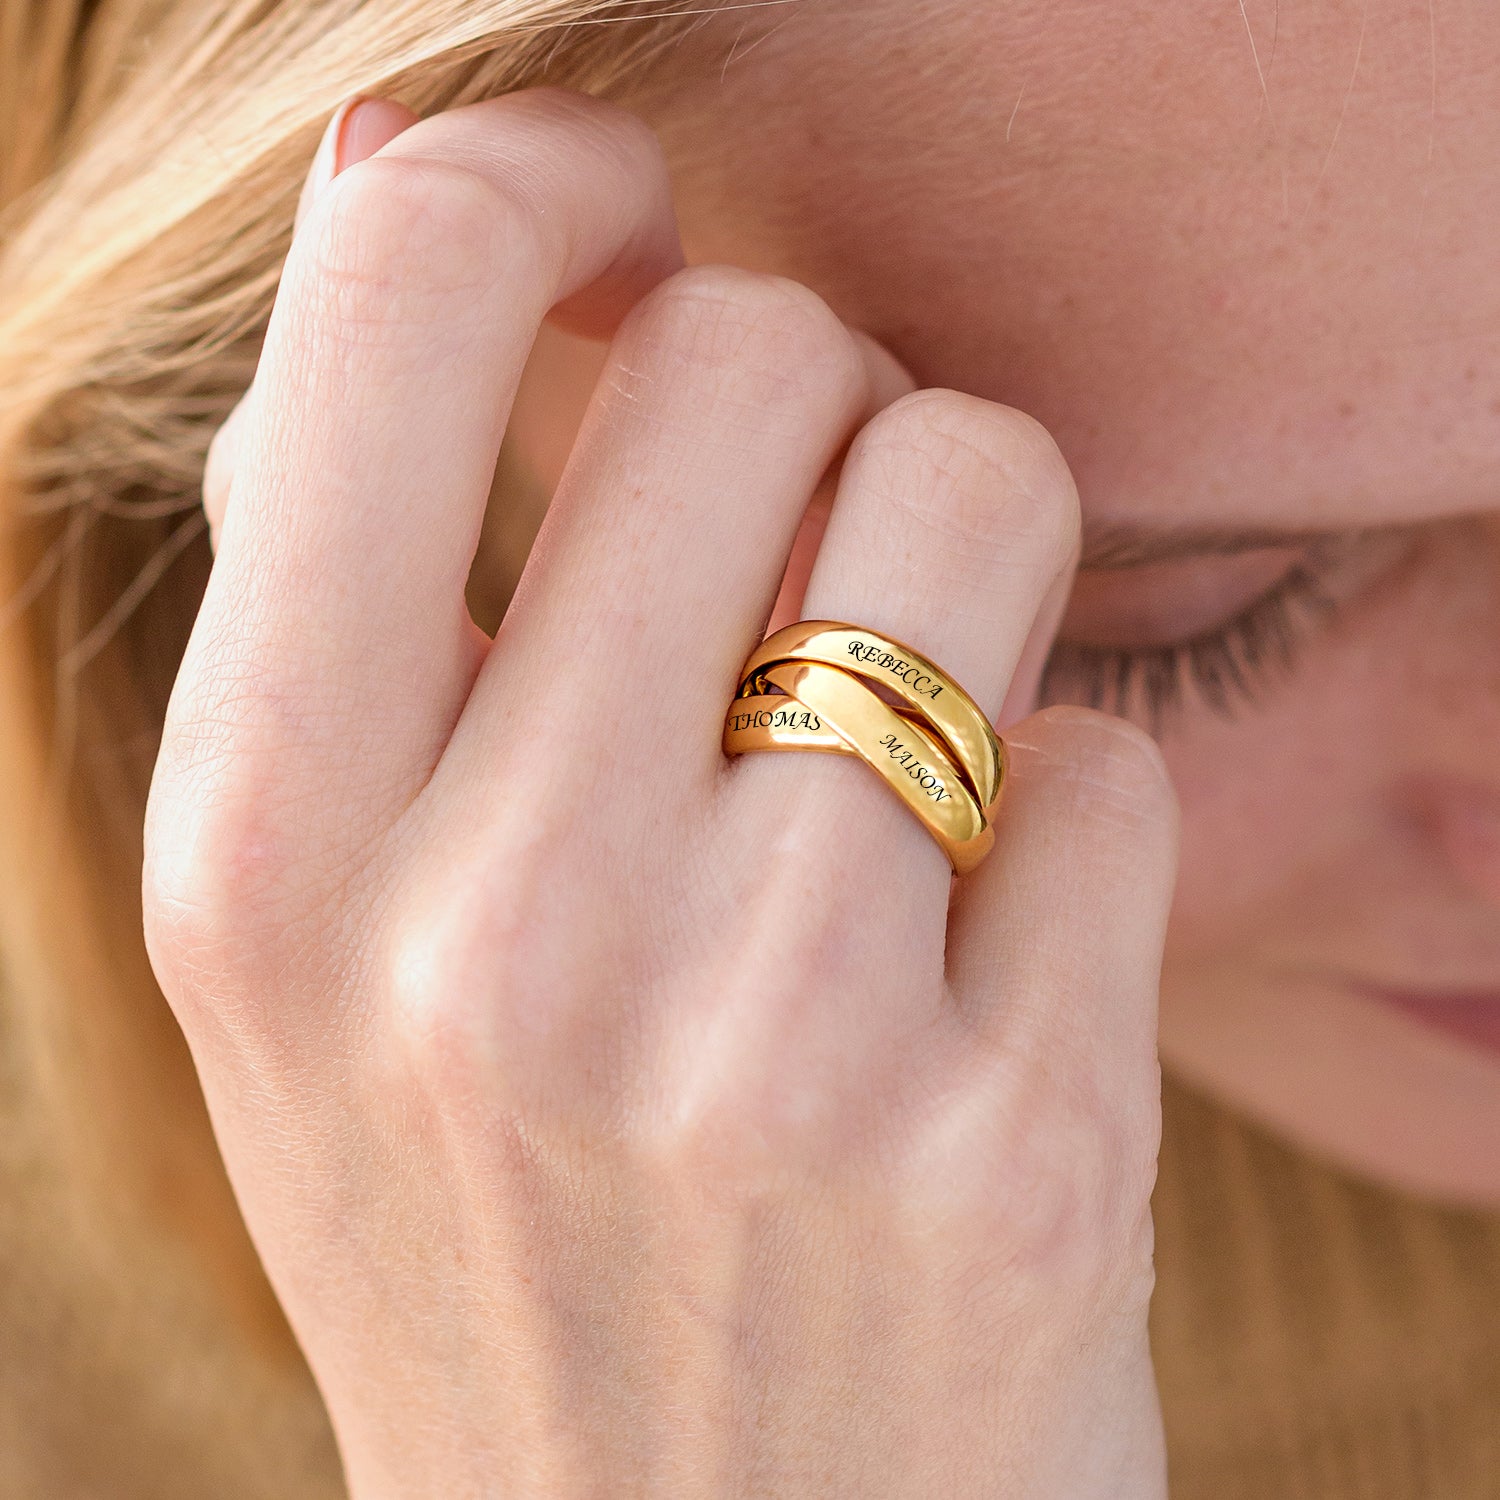 טבעת רוסית בחריטה אישית- 3 טבעות משולבות עם חריטה מציפוי זהב ורמייל